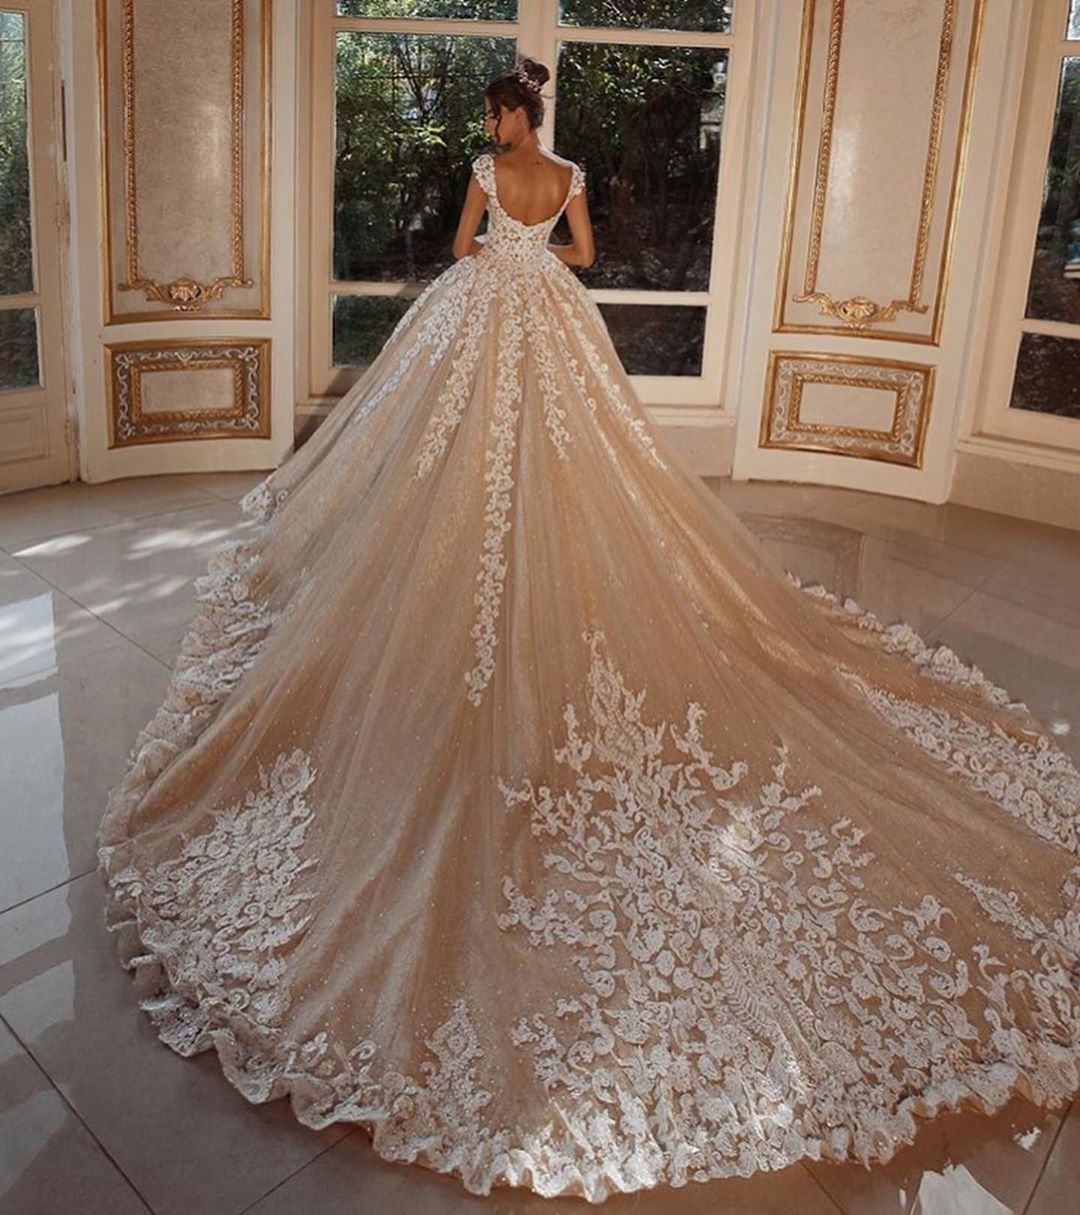 Kaufen Sie Luxus Hochzeitskleider Lang Glitzer online bei babyonlinedress.de. Brautkleider Prinzessin mit Spitze für Sie nach maß zur Hochzeit gehen.